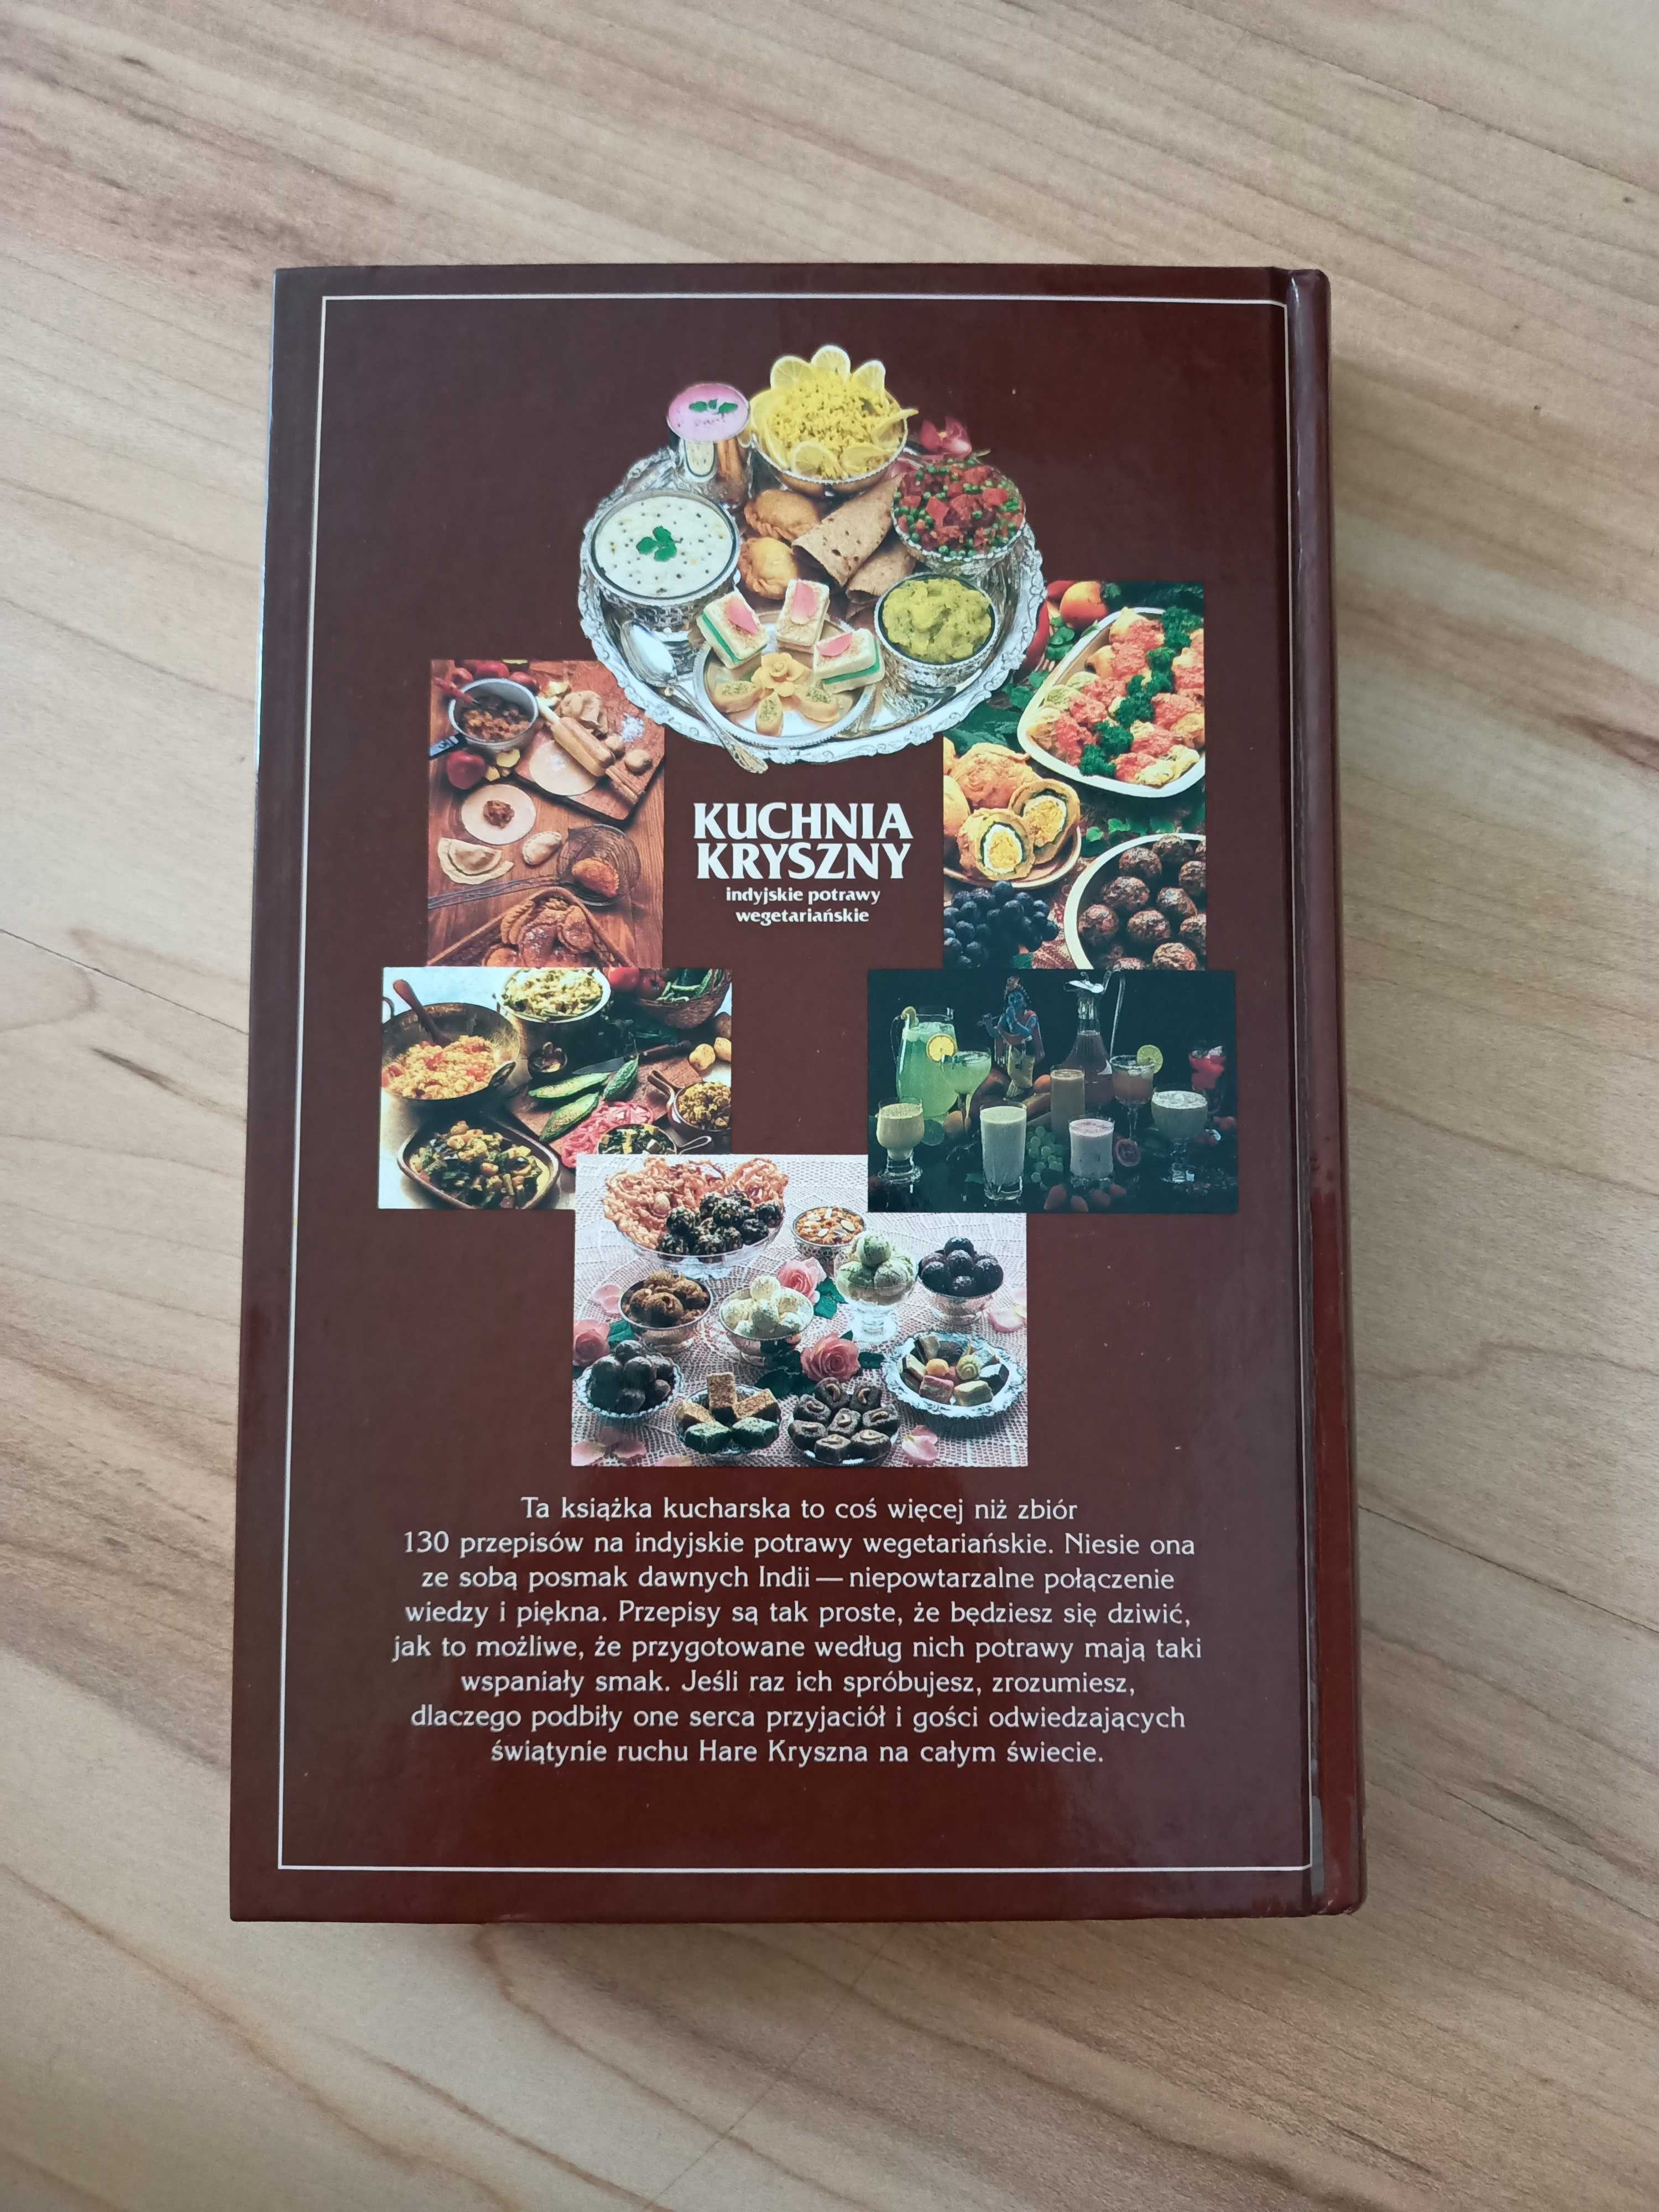 Kuchnia Kryszny - indyjskie potrawy wegetariańskie